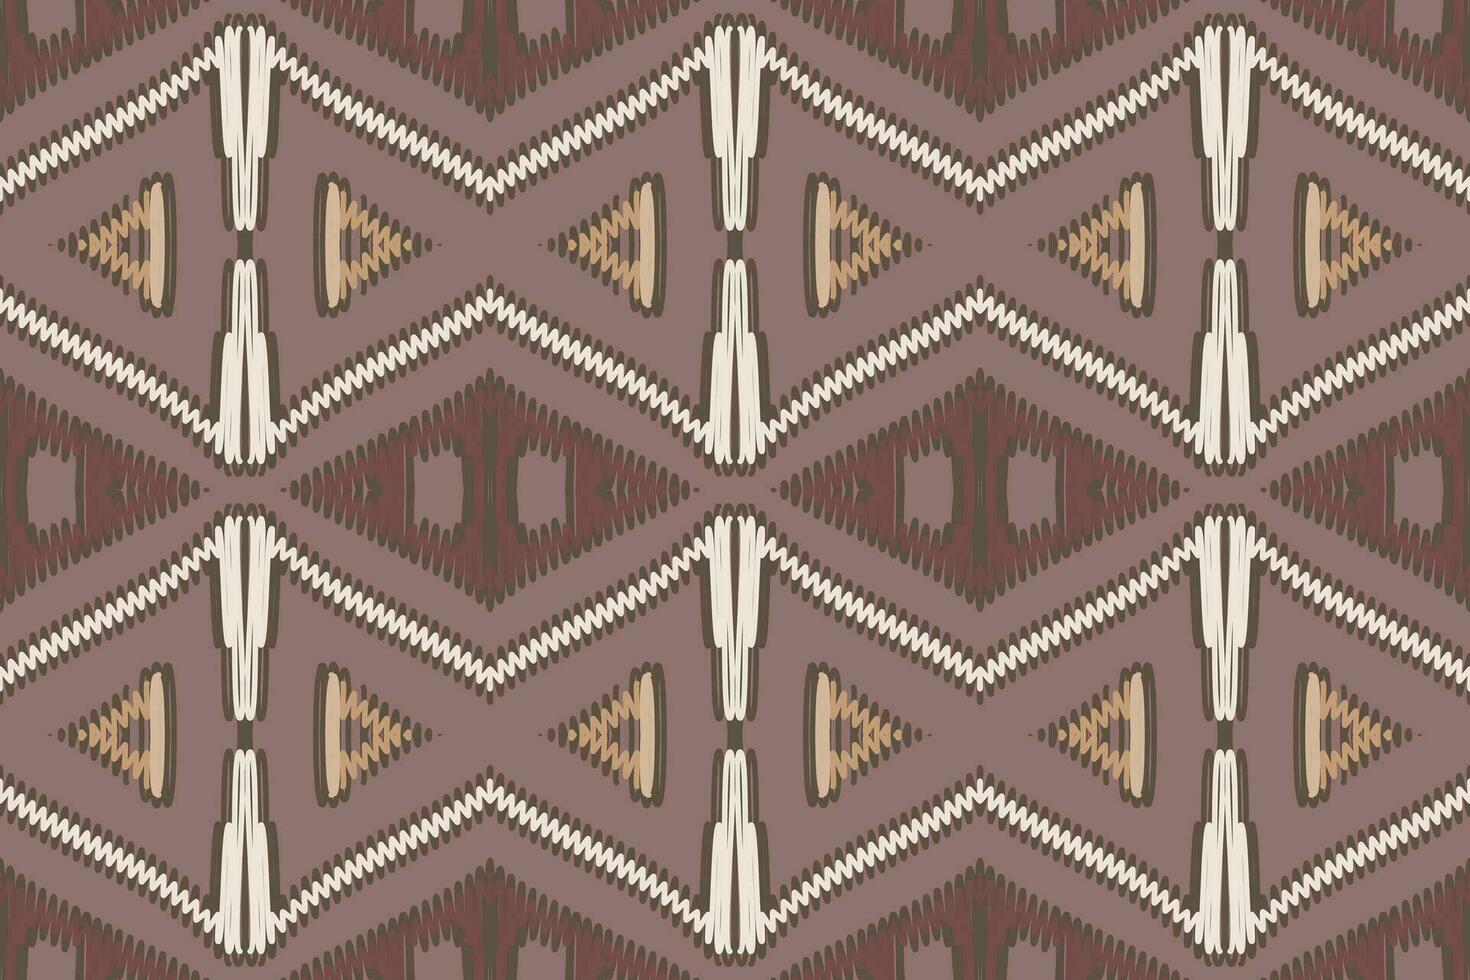 lapwerk patroon naadloos Australisch aboriginal patroon motief borduurwerk, ikat borduurwerk vector ontwerp voor afdrukken Indonesisch batik motief borduurwerk inheems Amerikaans Kurta mughal ontwerp